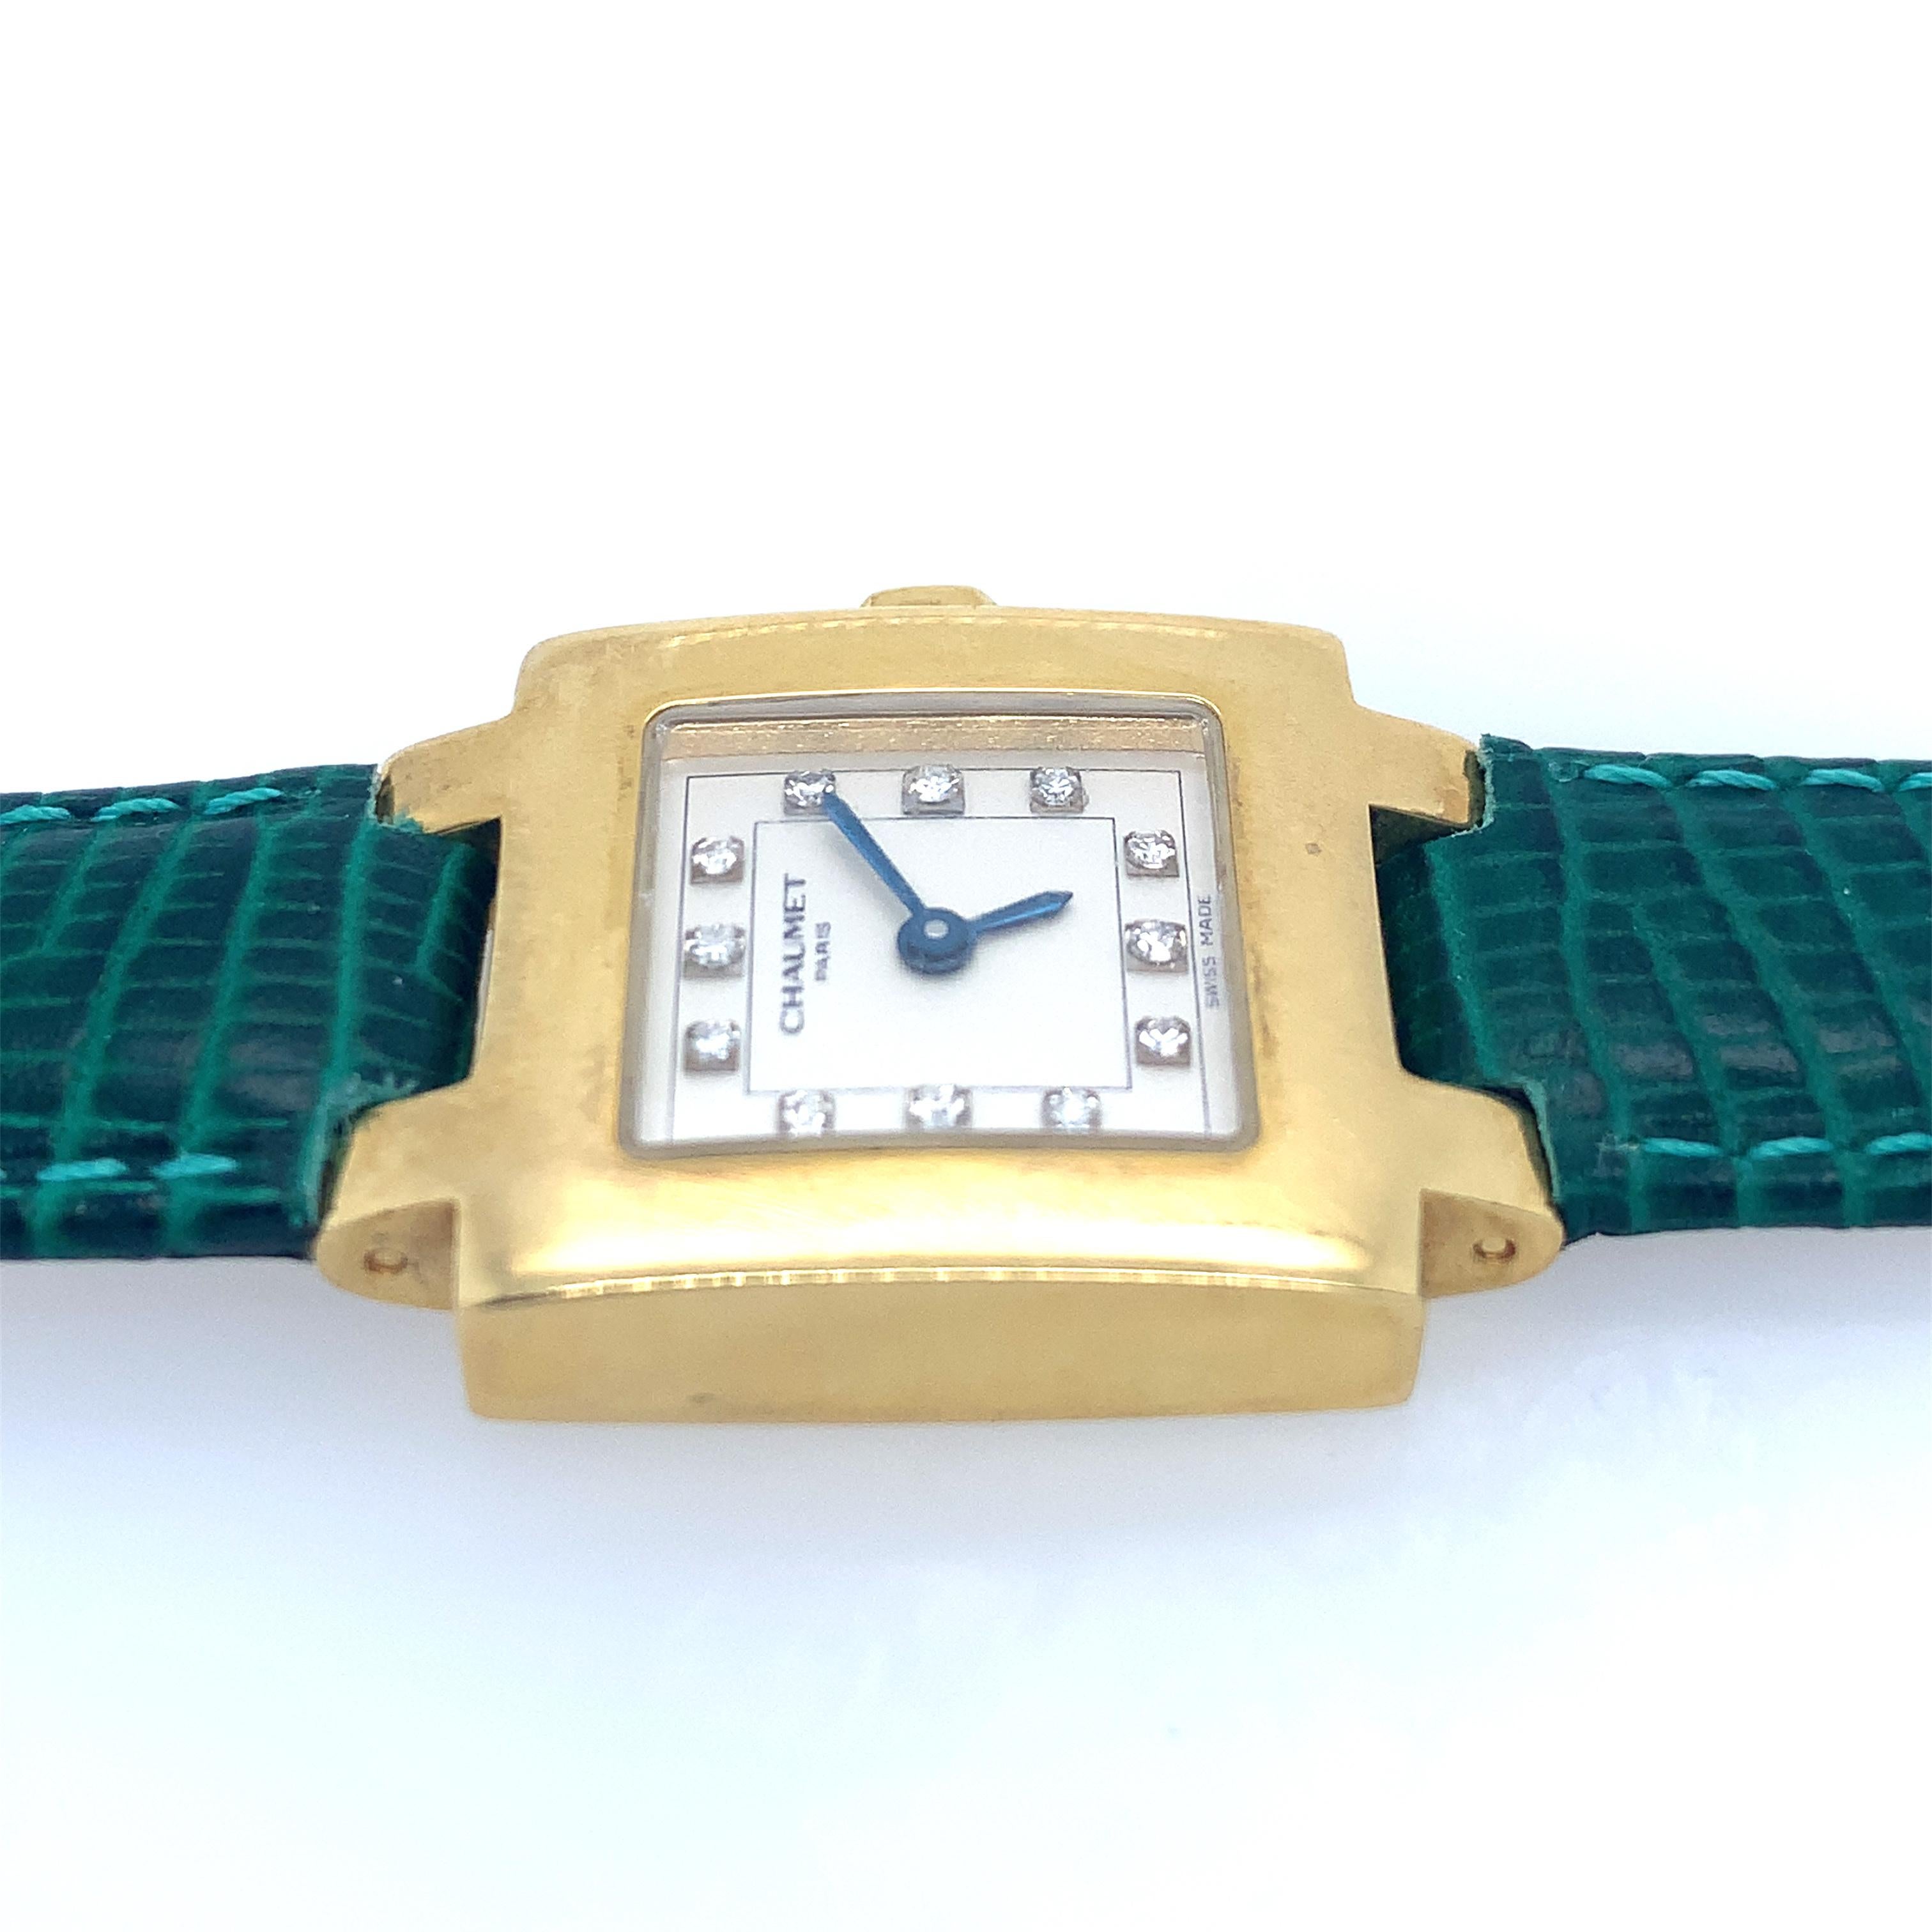 De l'horloger français de luxe Chaumet, une exquise montre-bracelet à quartz Chaumet Paris en or jaune 18 carats et diamants. Douze (12) diamants marquent chaque heure sur ce boîtier carré de 21 mm. Le boîtier en or jaune 18 carats est rehaussé d'un